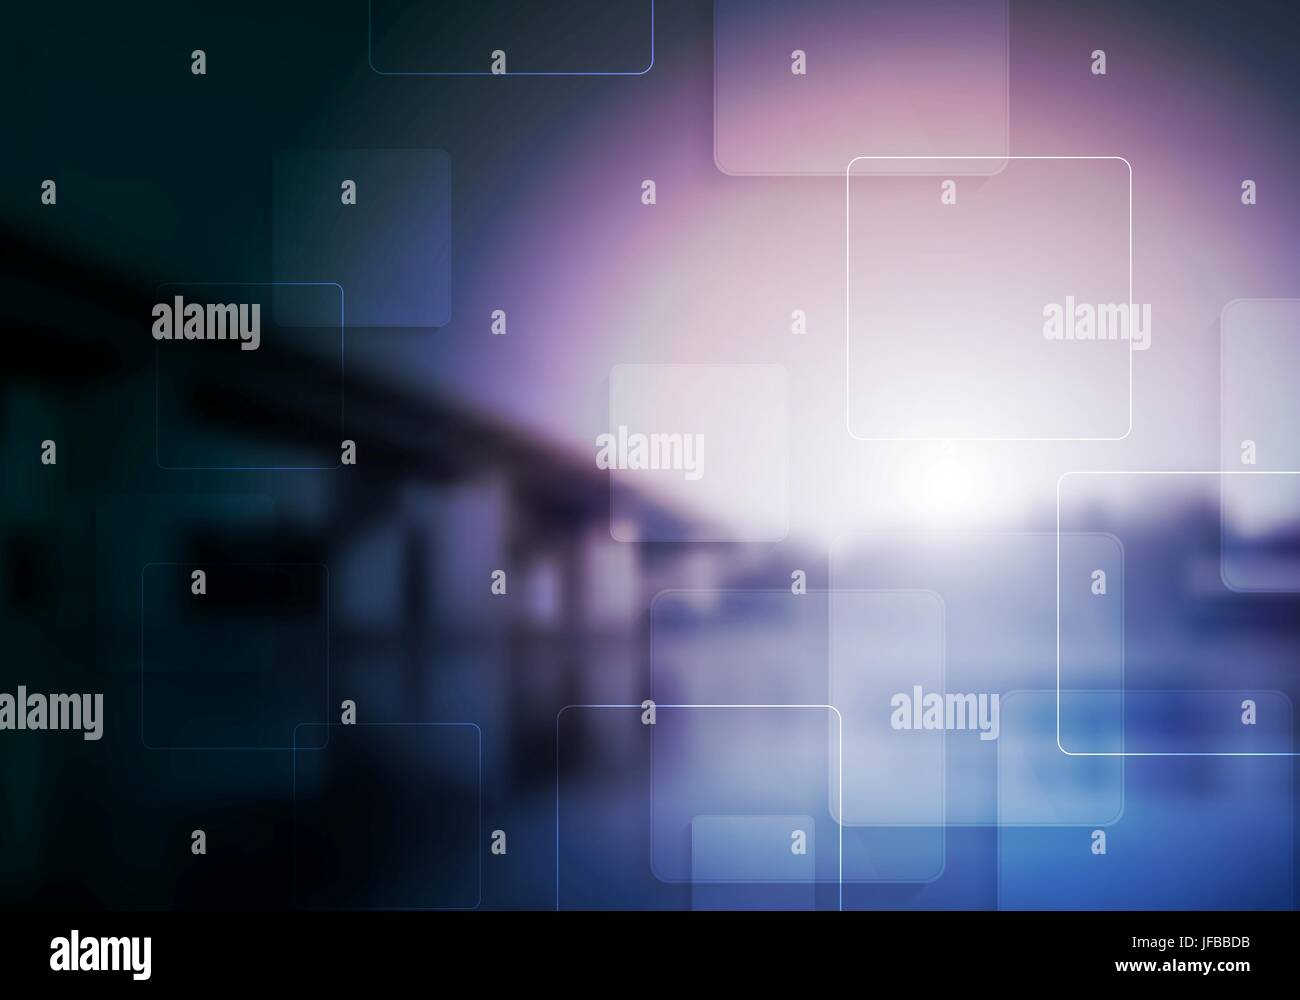 Mise en page collage tech lumineux Banque D'Images